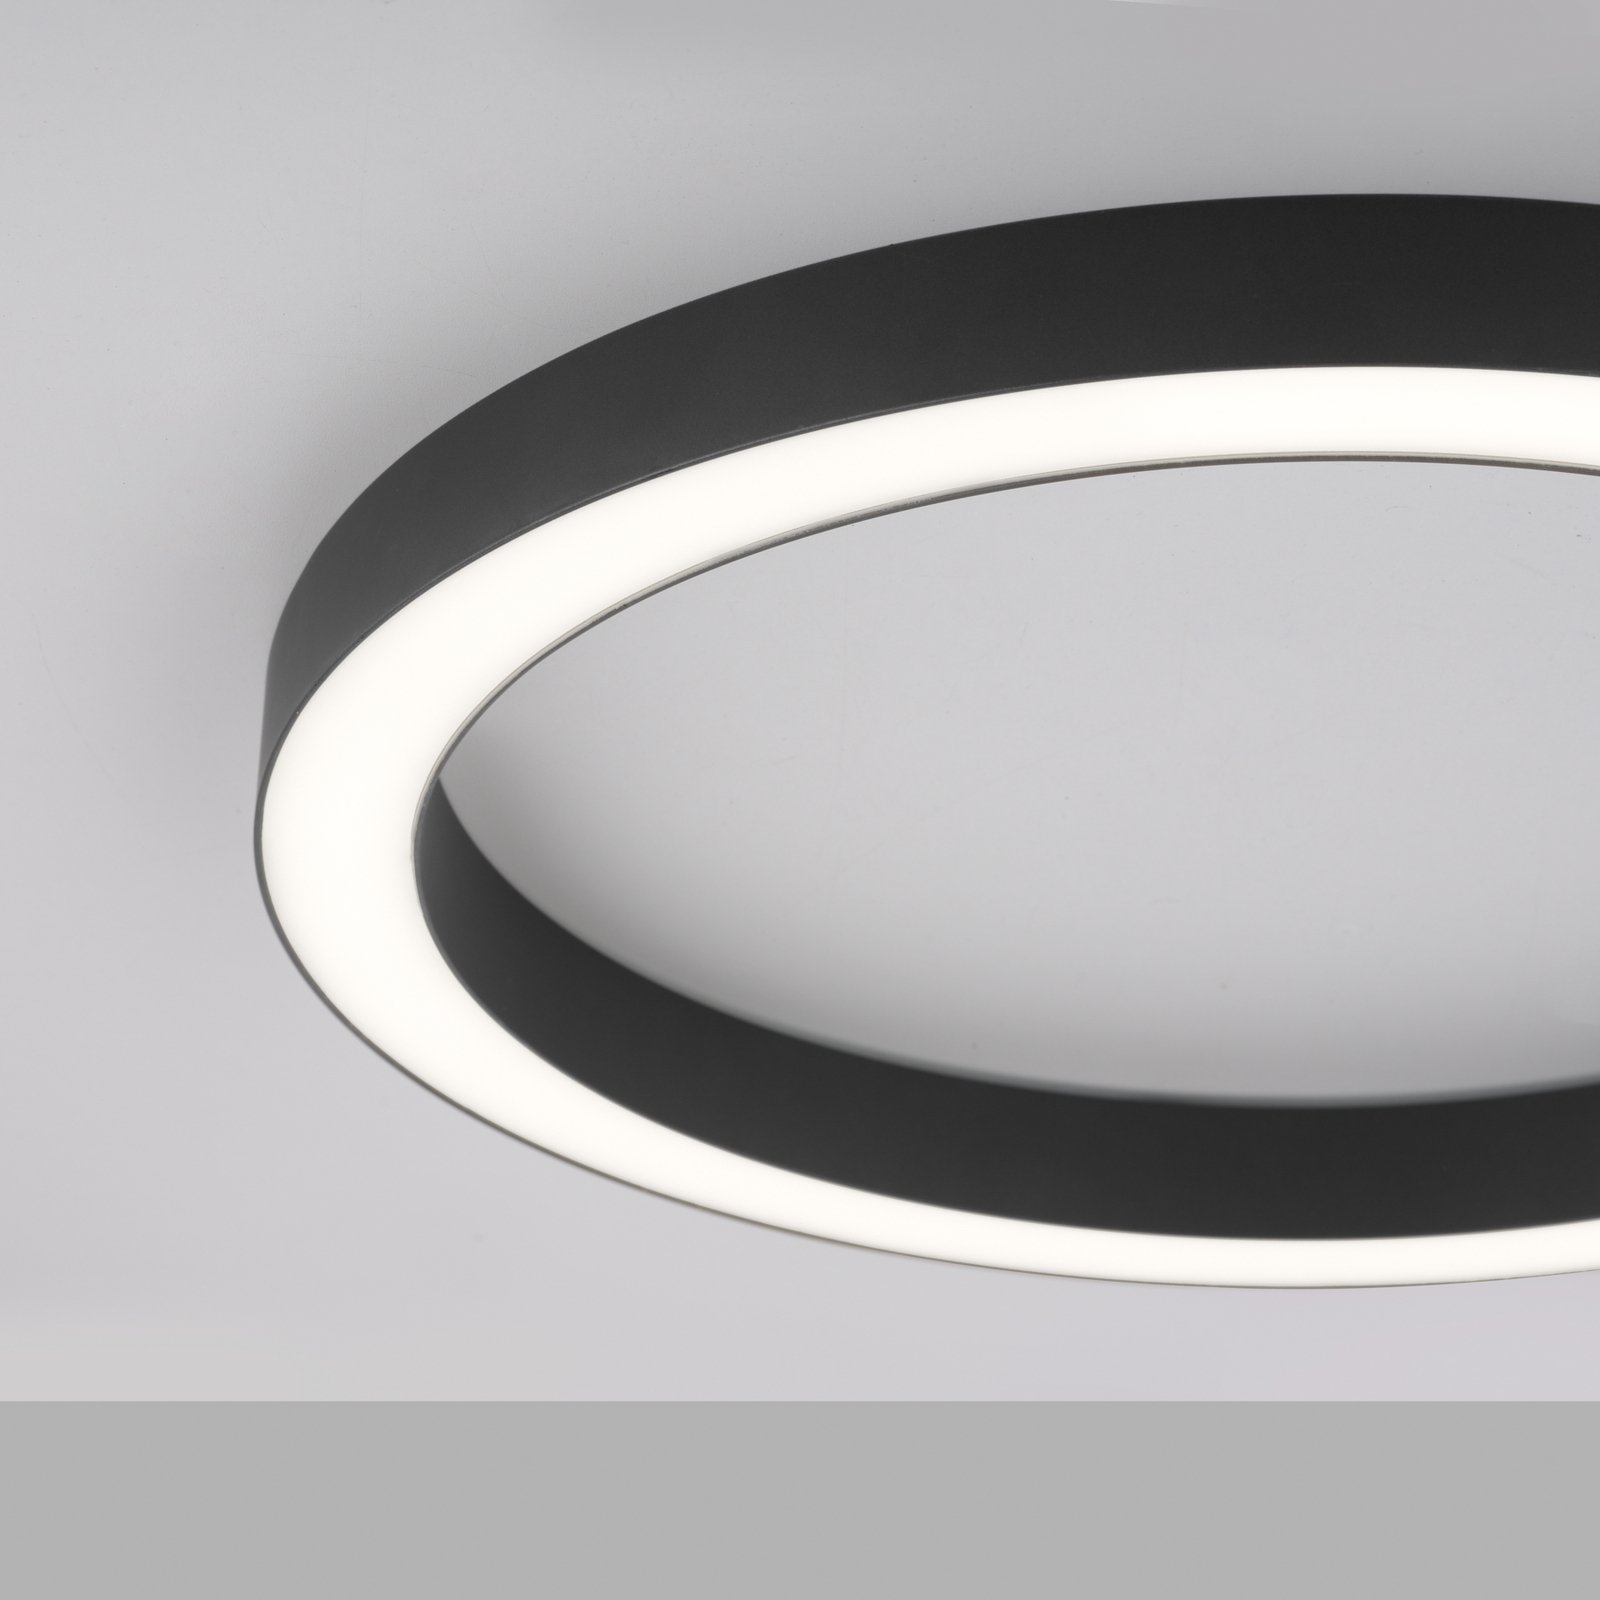 Stropní svítidlo PURE Lines LED, kulaté Ø50cm, antracitová barva